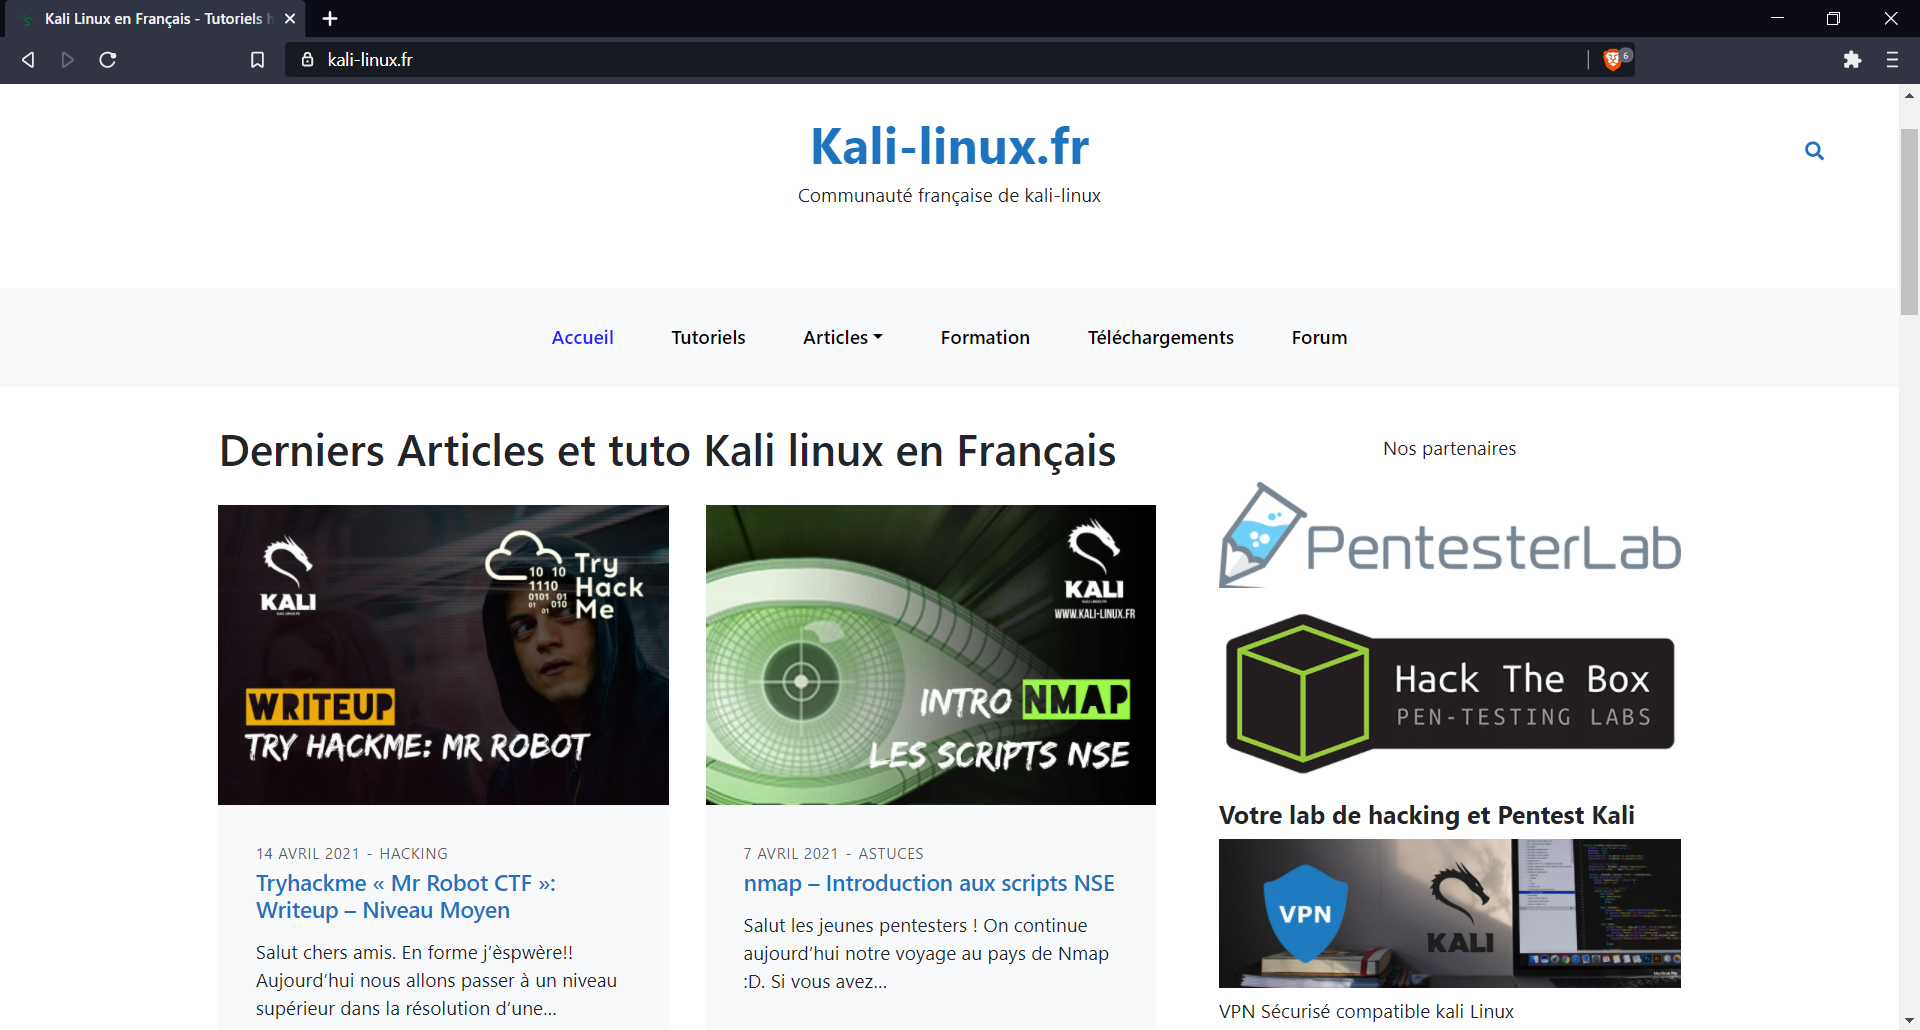 le site internet kali-linux.fr